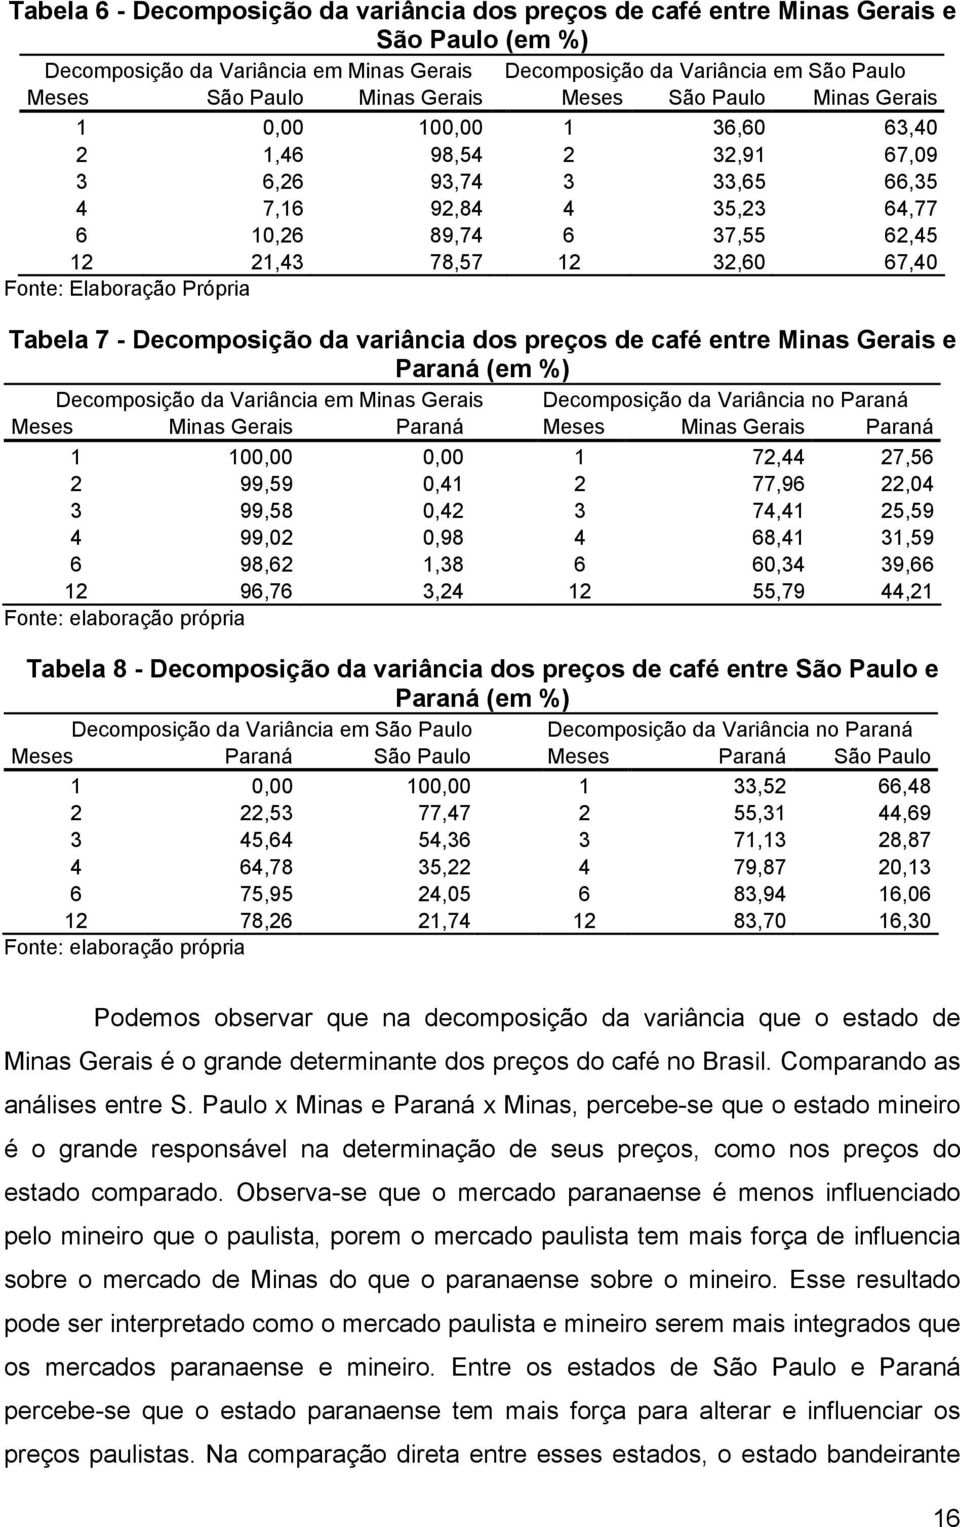 67,40 Fonte: Elaboração Própria Tabela 7 - Decomposição da variância dos preços de café entre Minas Gerais e Paraná (em %) Decomposição da Variância em Minas Gerais Decomposição da Variância no